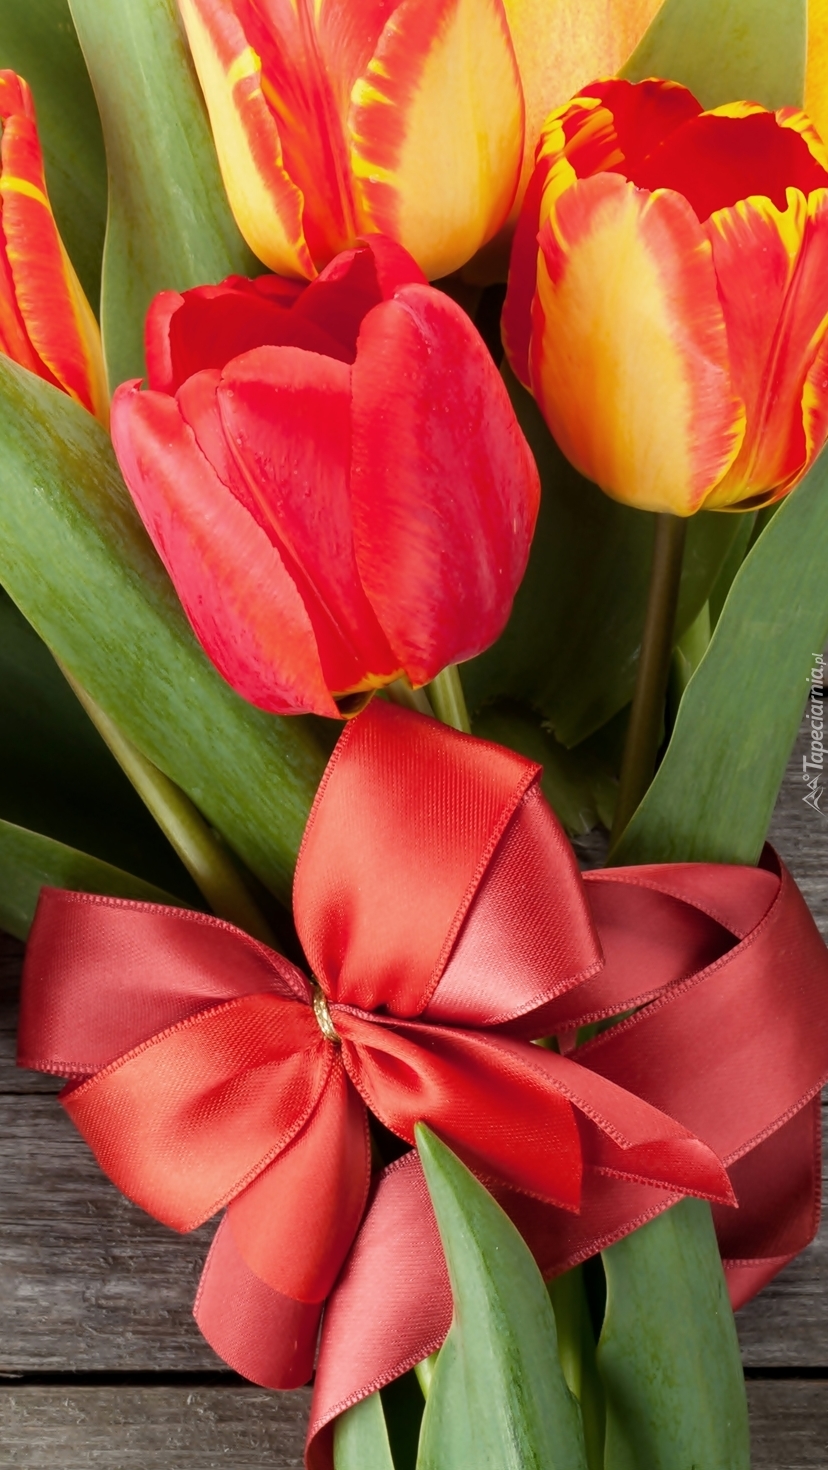 Bukiet tulipanów z czerwoną wstążką